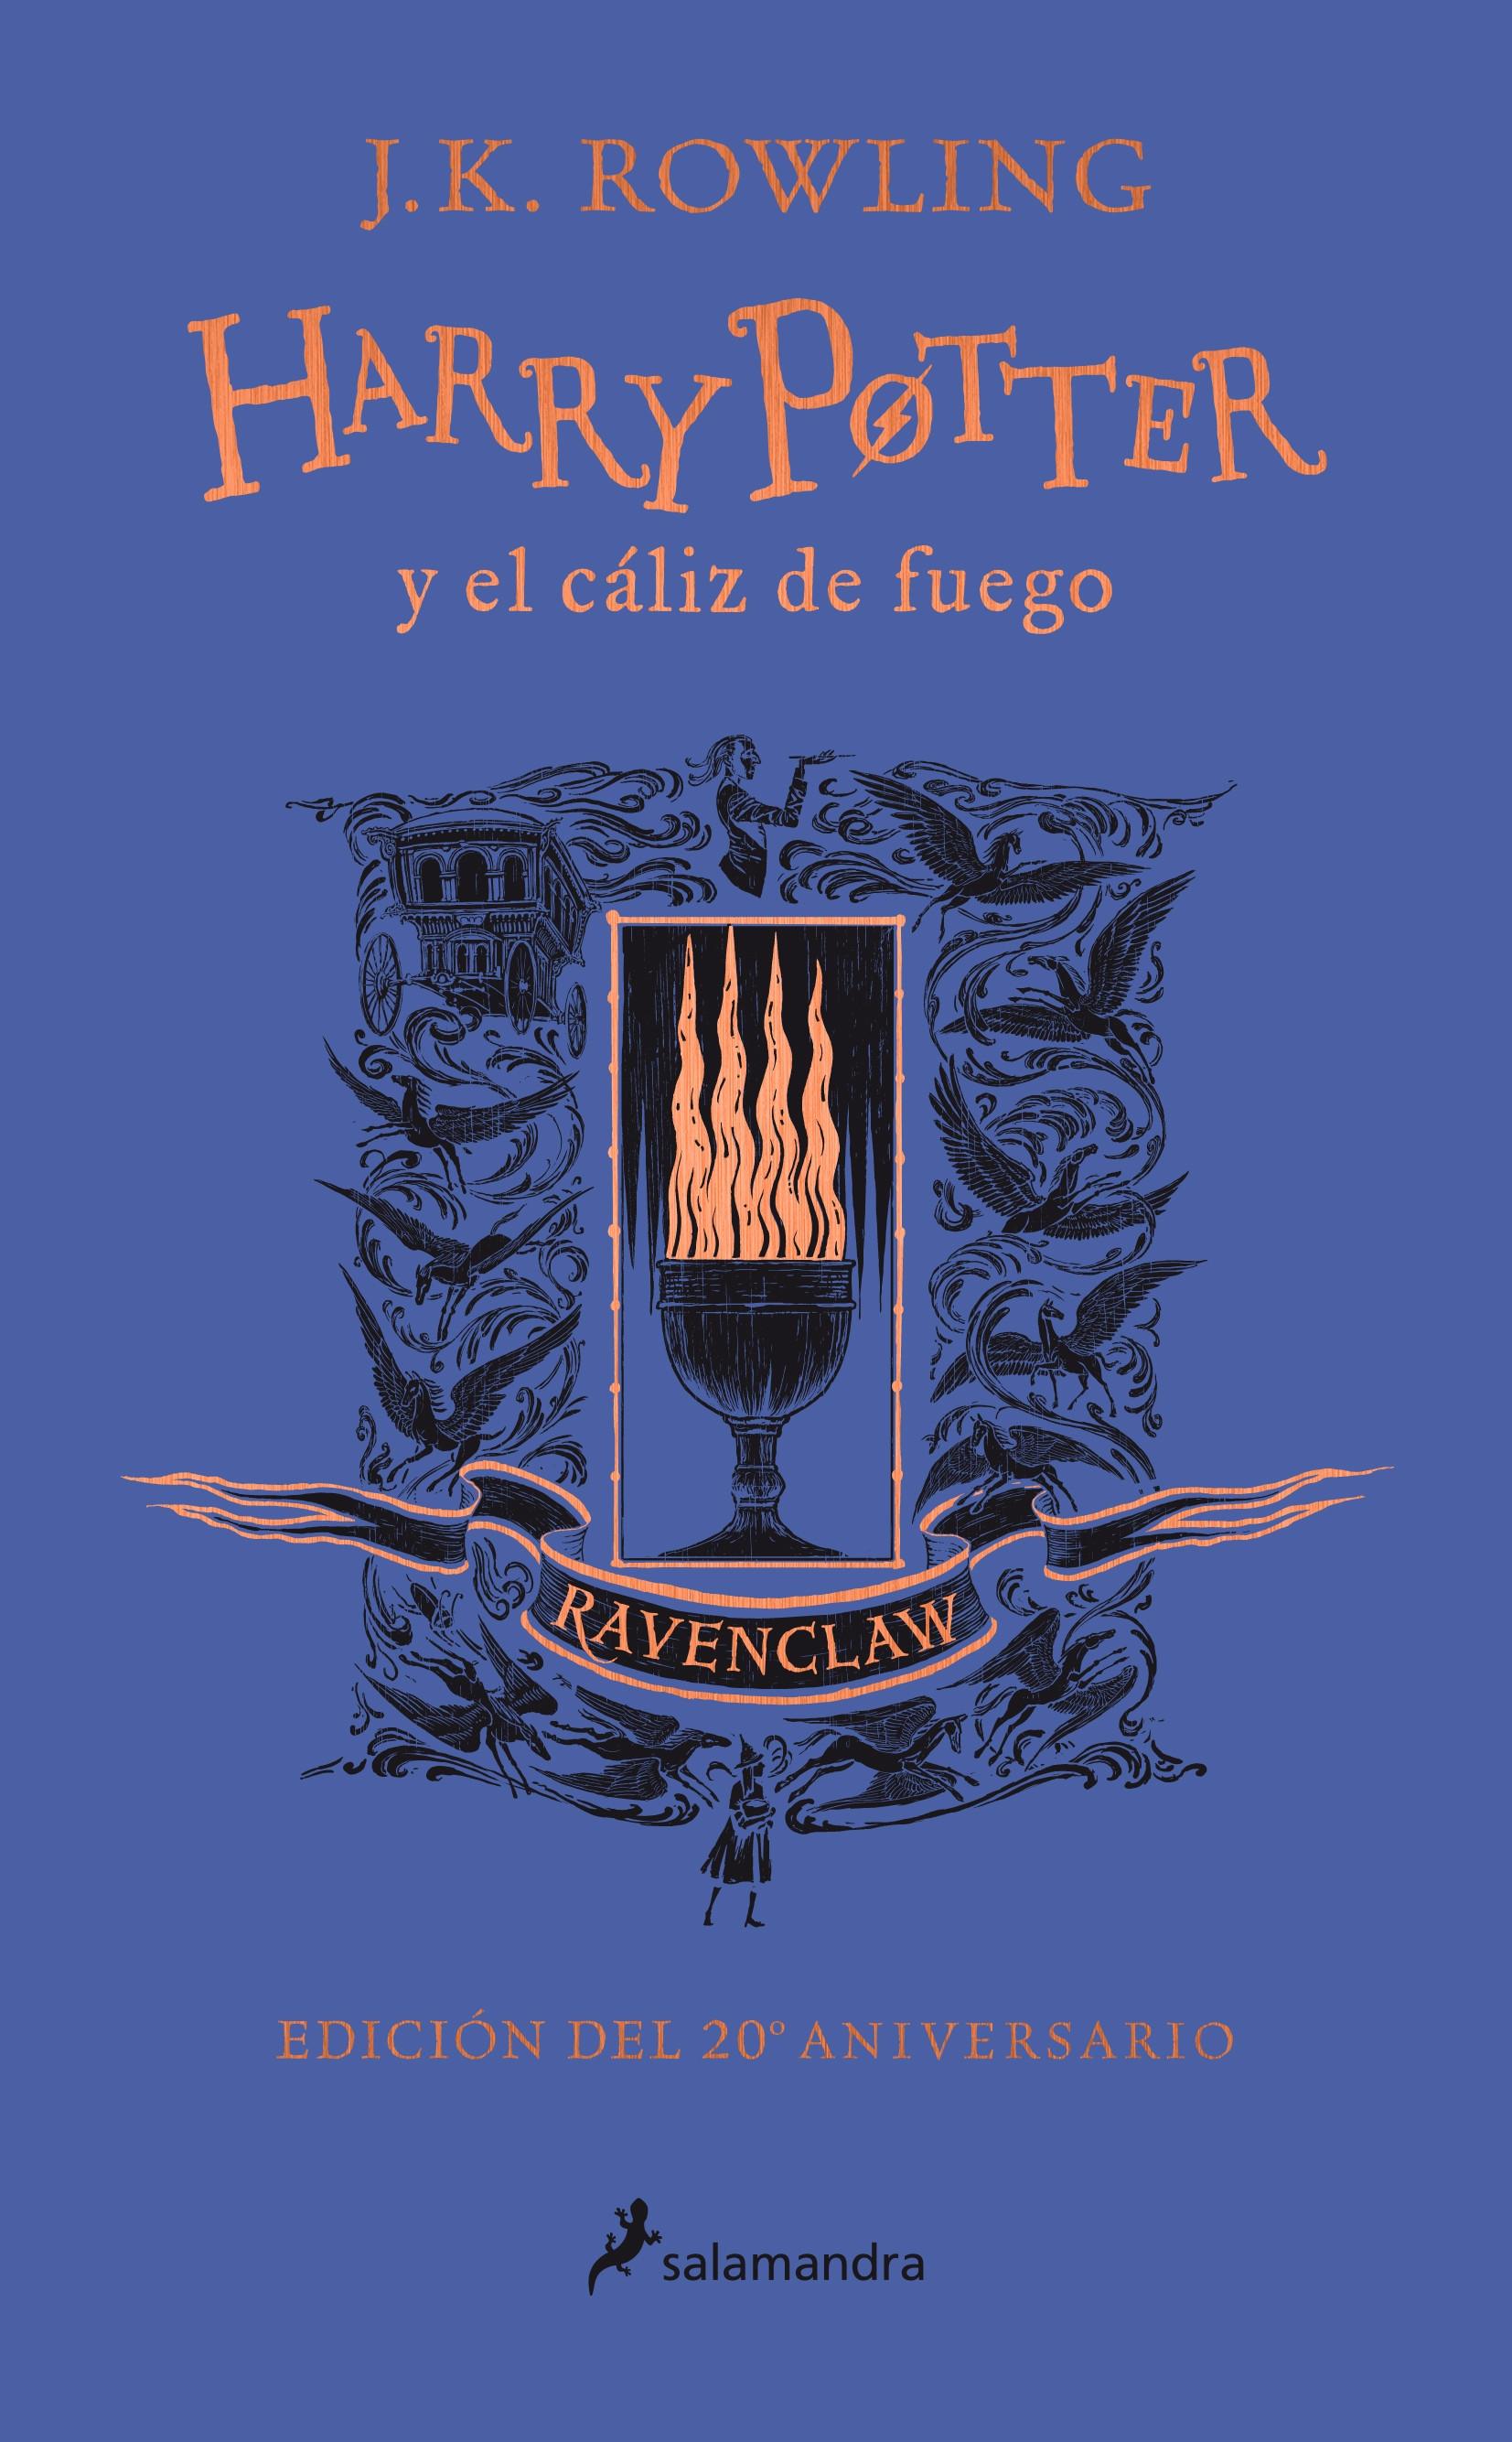 Harry Potter y el cáliz de fuego: Ravenclaw (Harry Potter - 4) "Ingenio - Estudio - Sabiduría (Edición del 20 Aniversario)". 